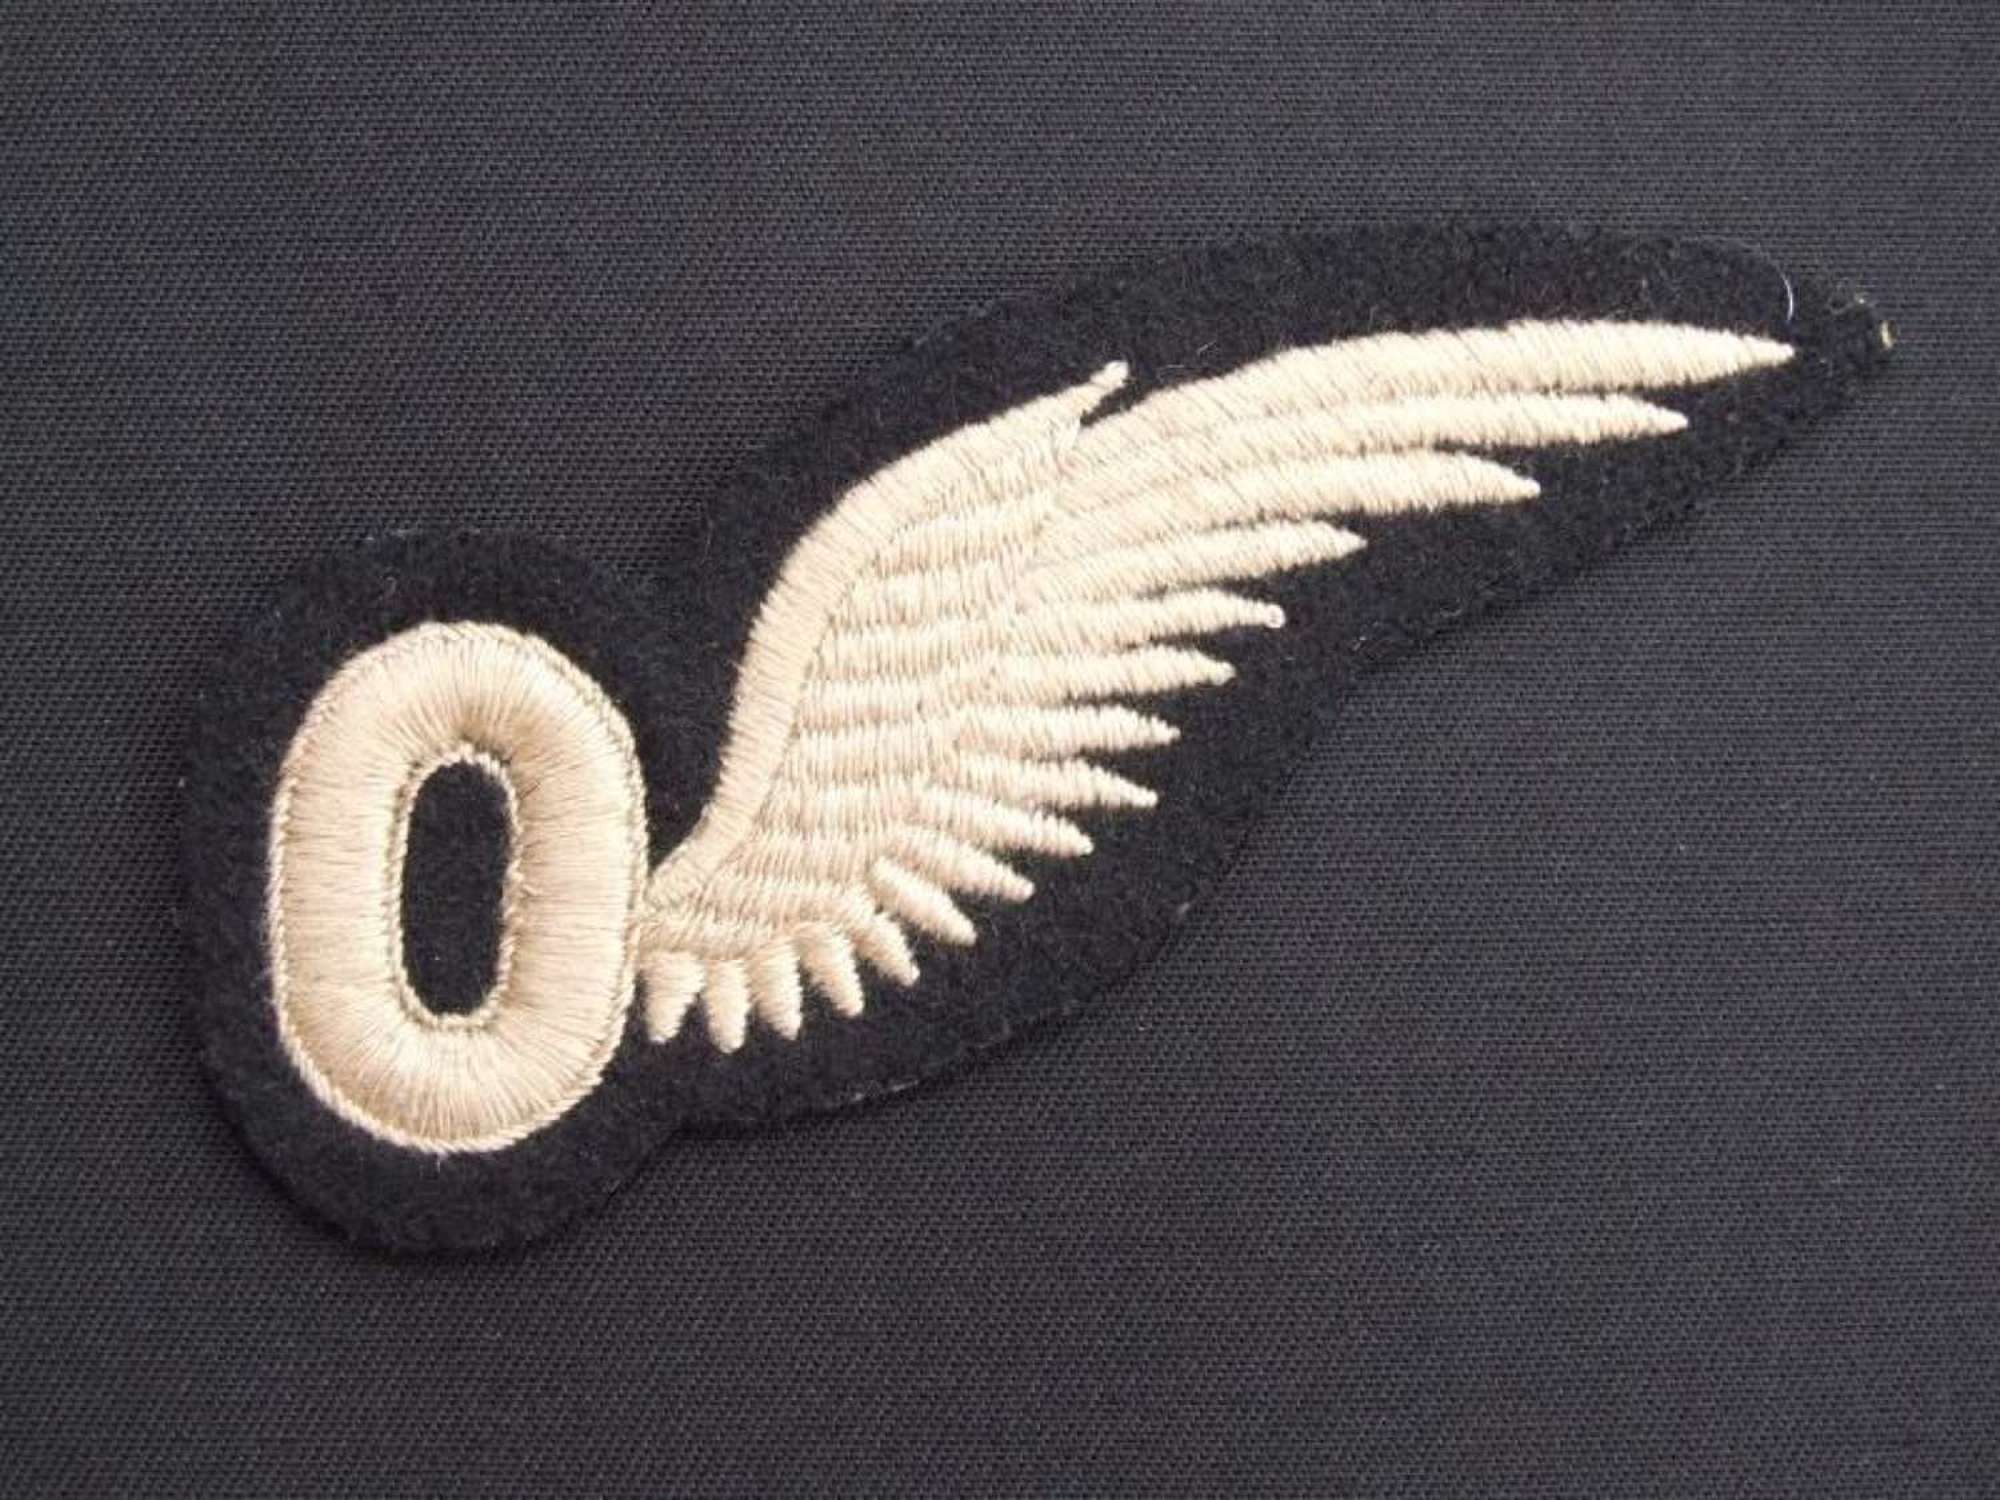 WW11 RAF Observers Wing